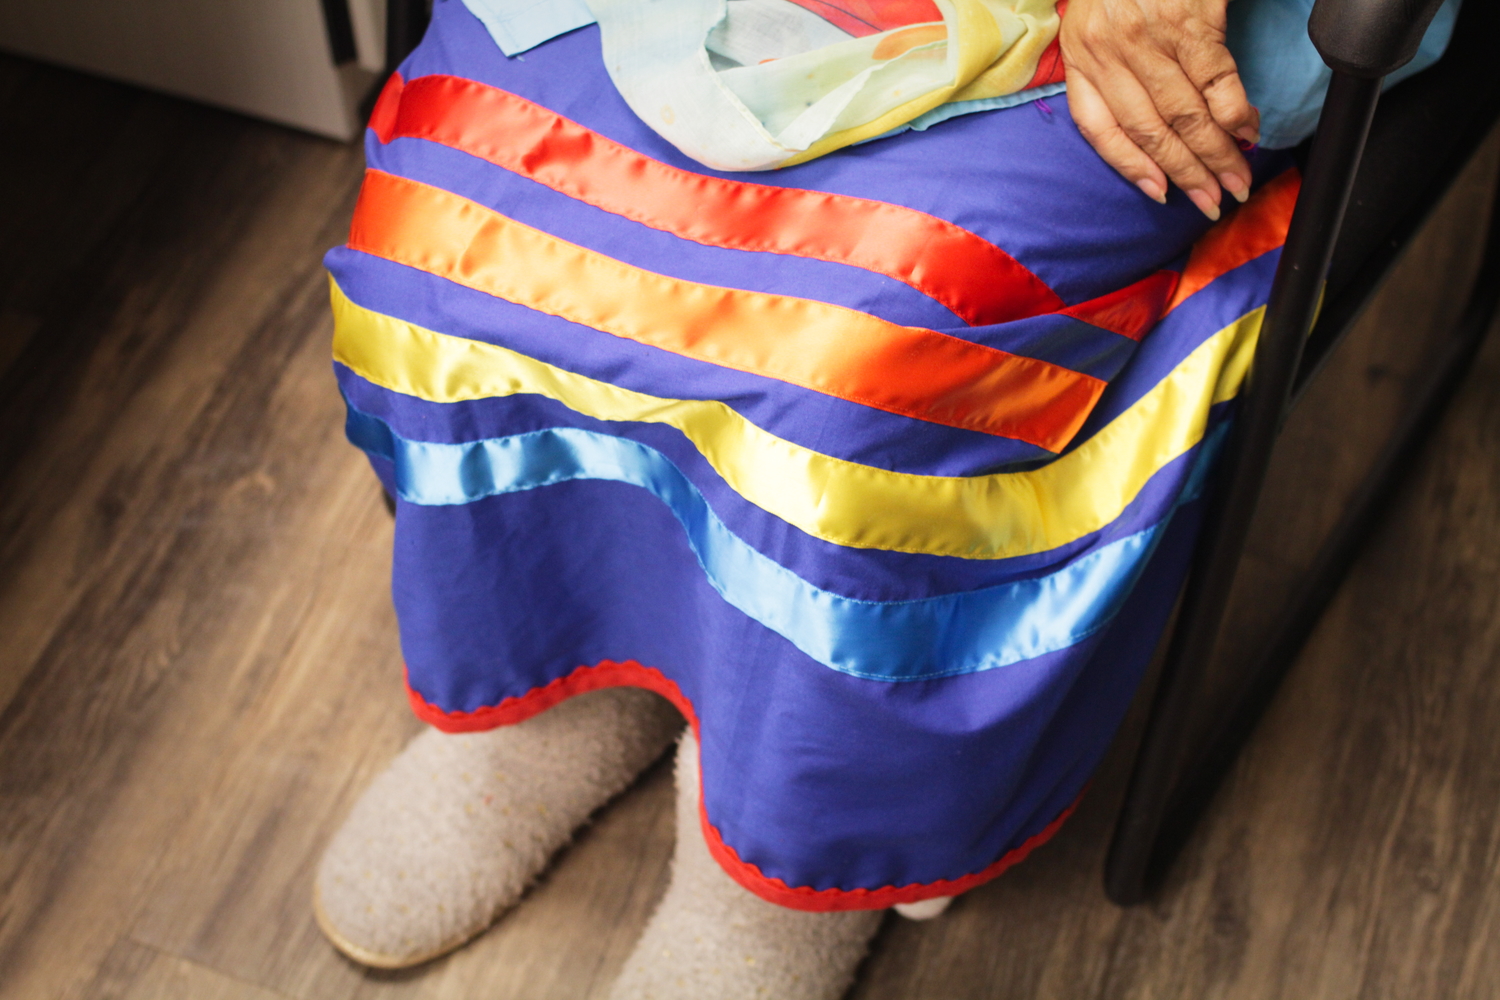 La jupe de rubans de Dianne, un habit traditionnel qu’elle met pour transmettre les savoirs. 